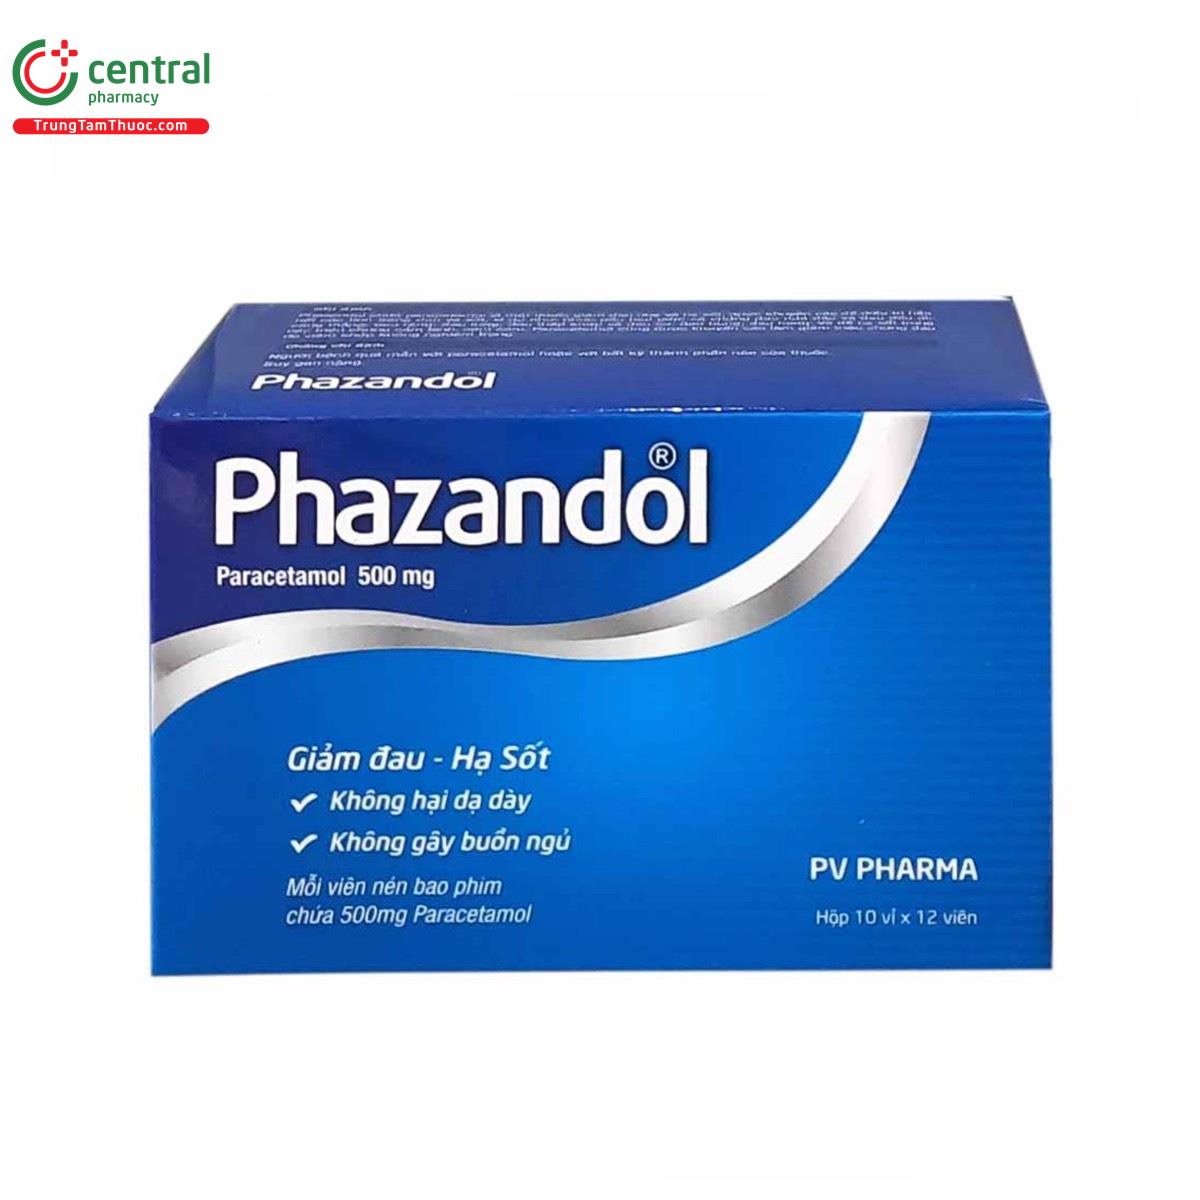 phazandol 500mg 3 L4256